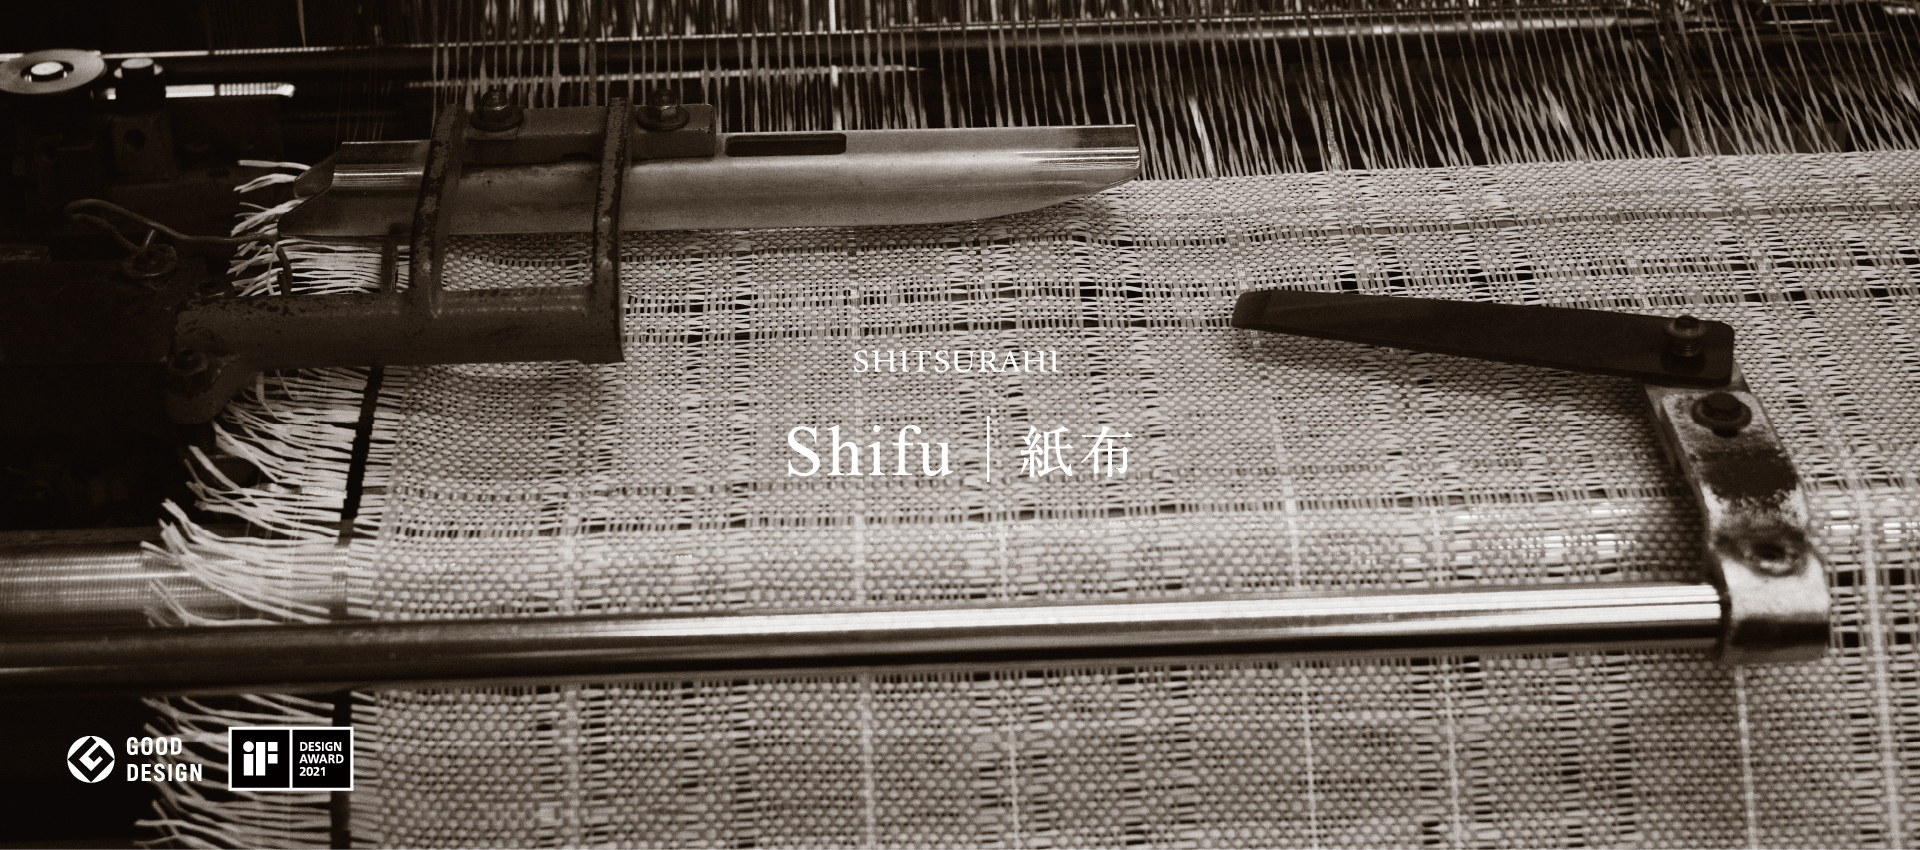 SHITSURAHI Shifu 紙布